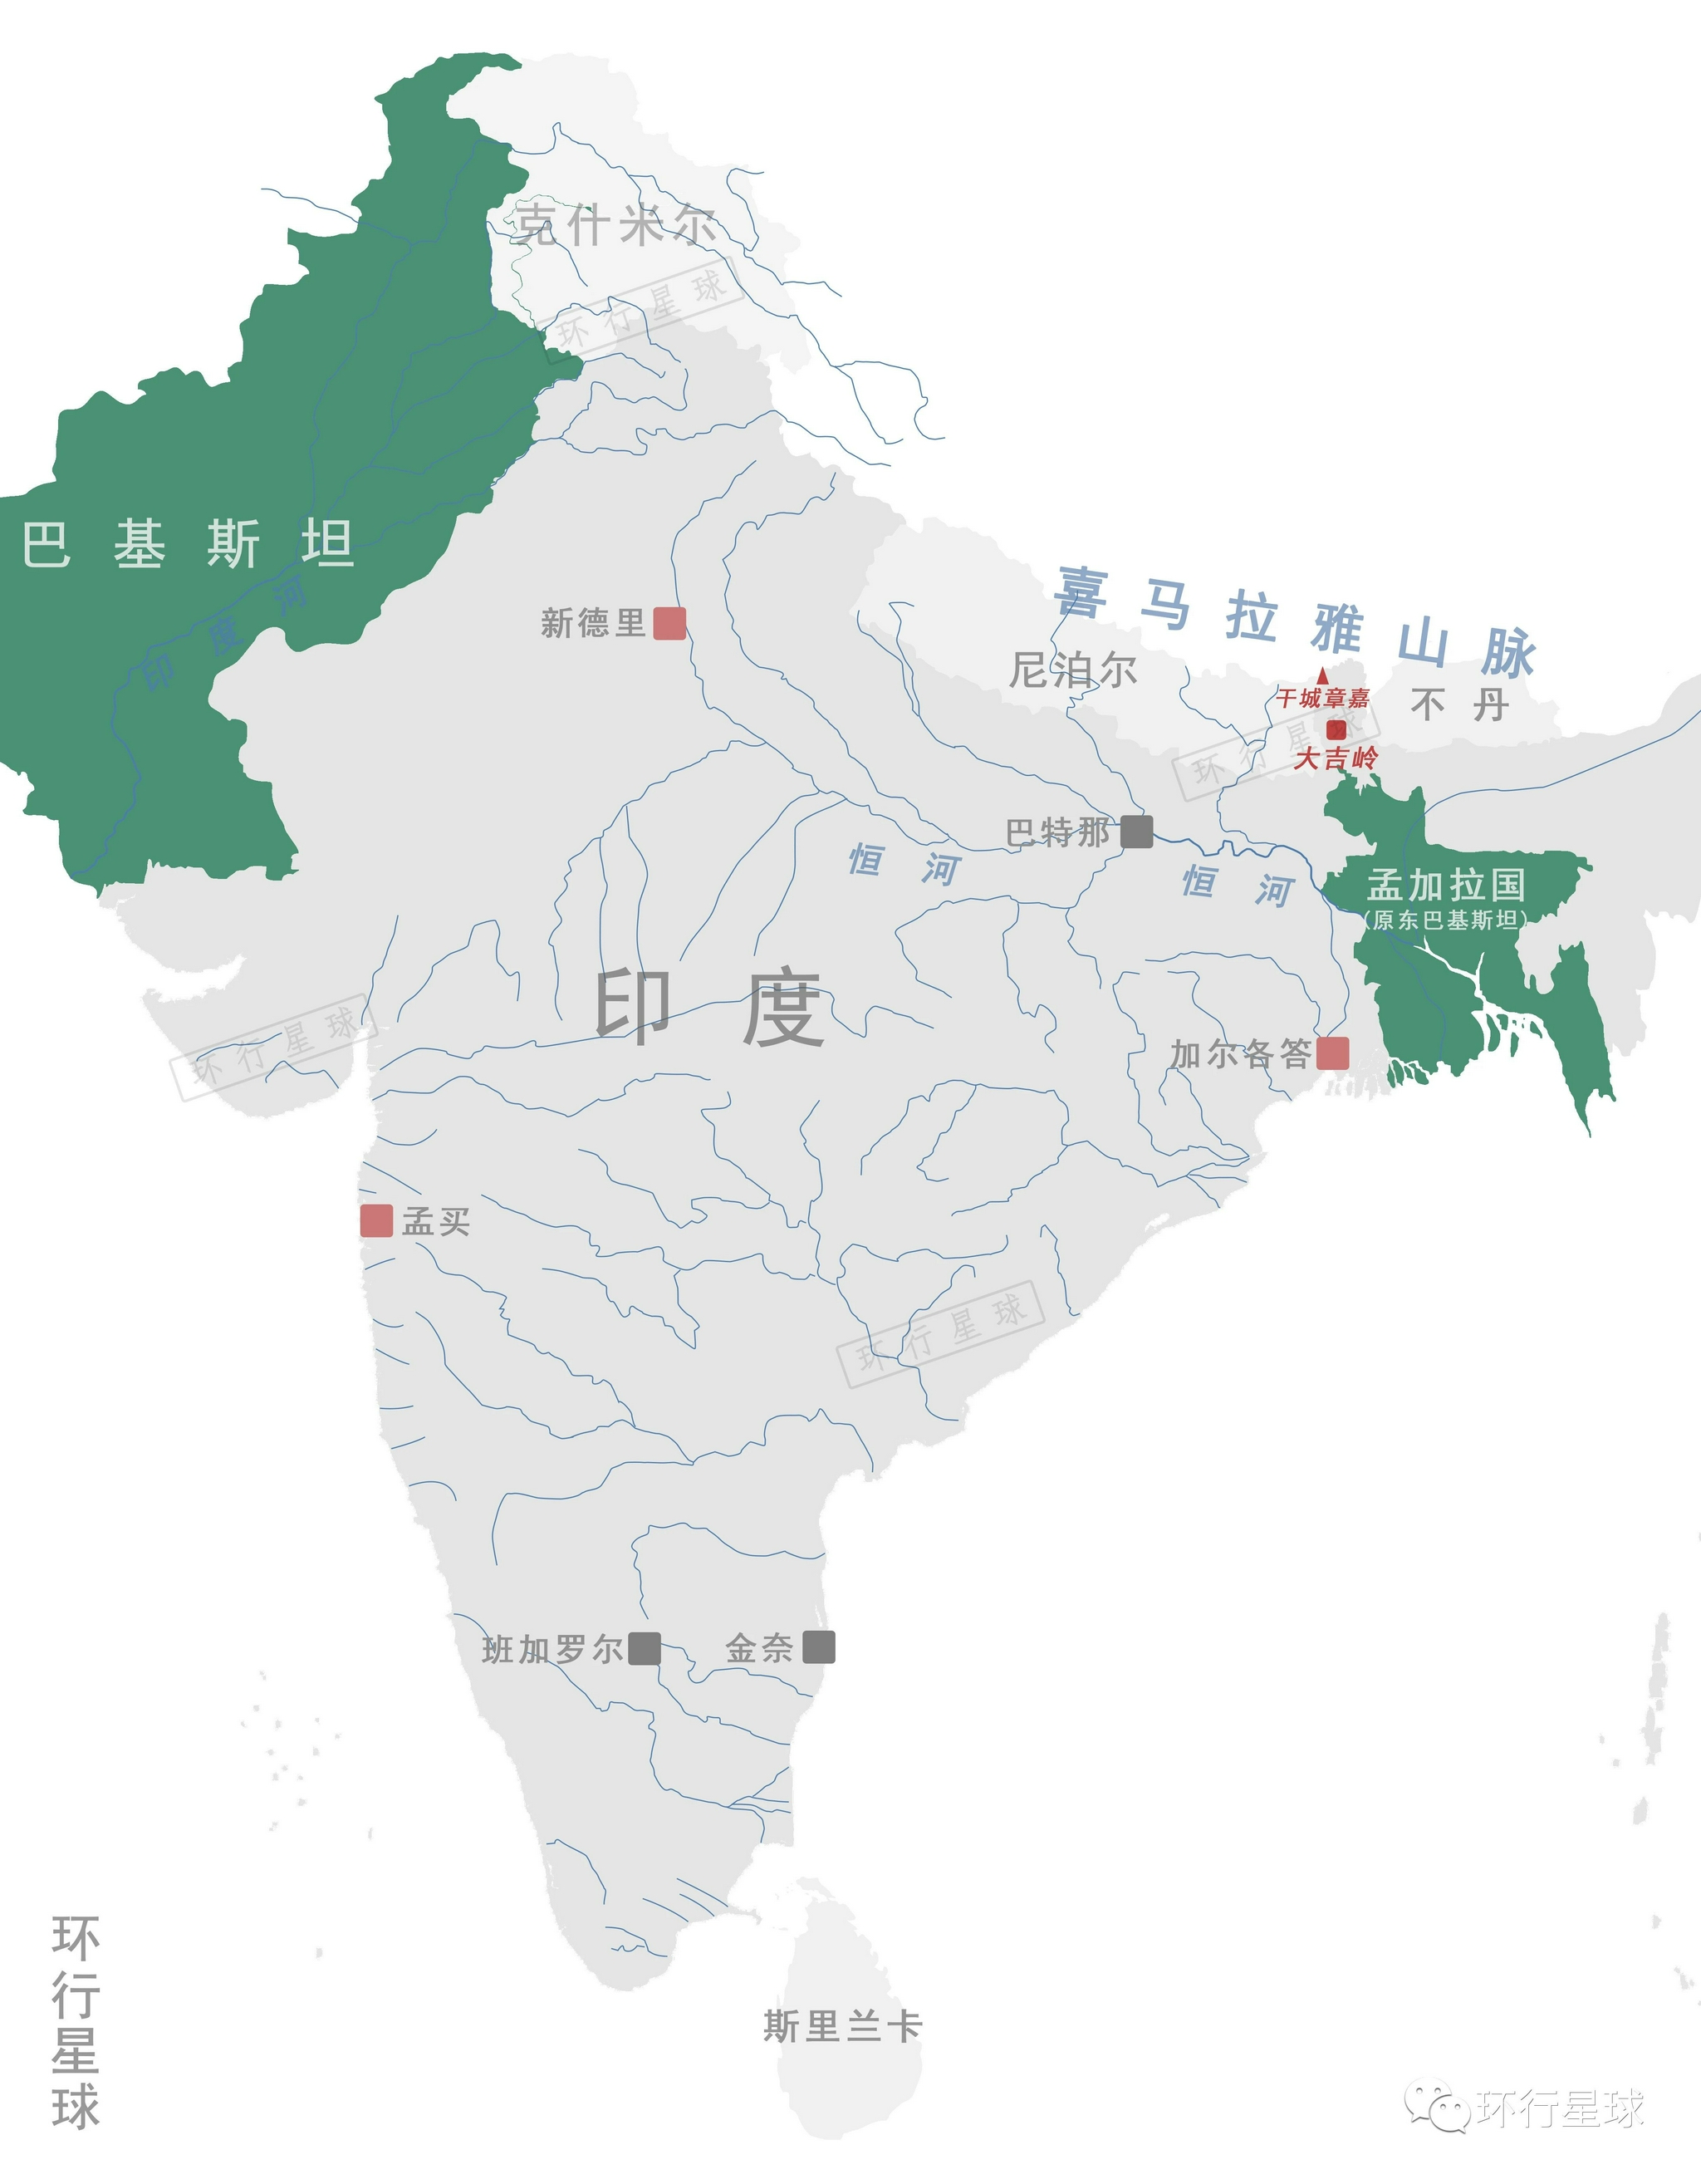 尼泊尔在地图上的位置图片